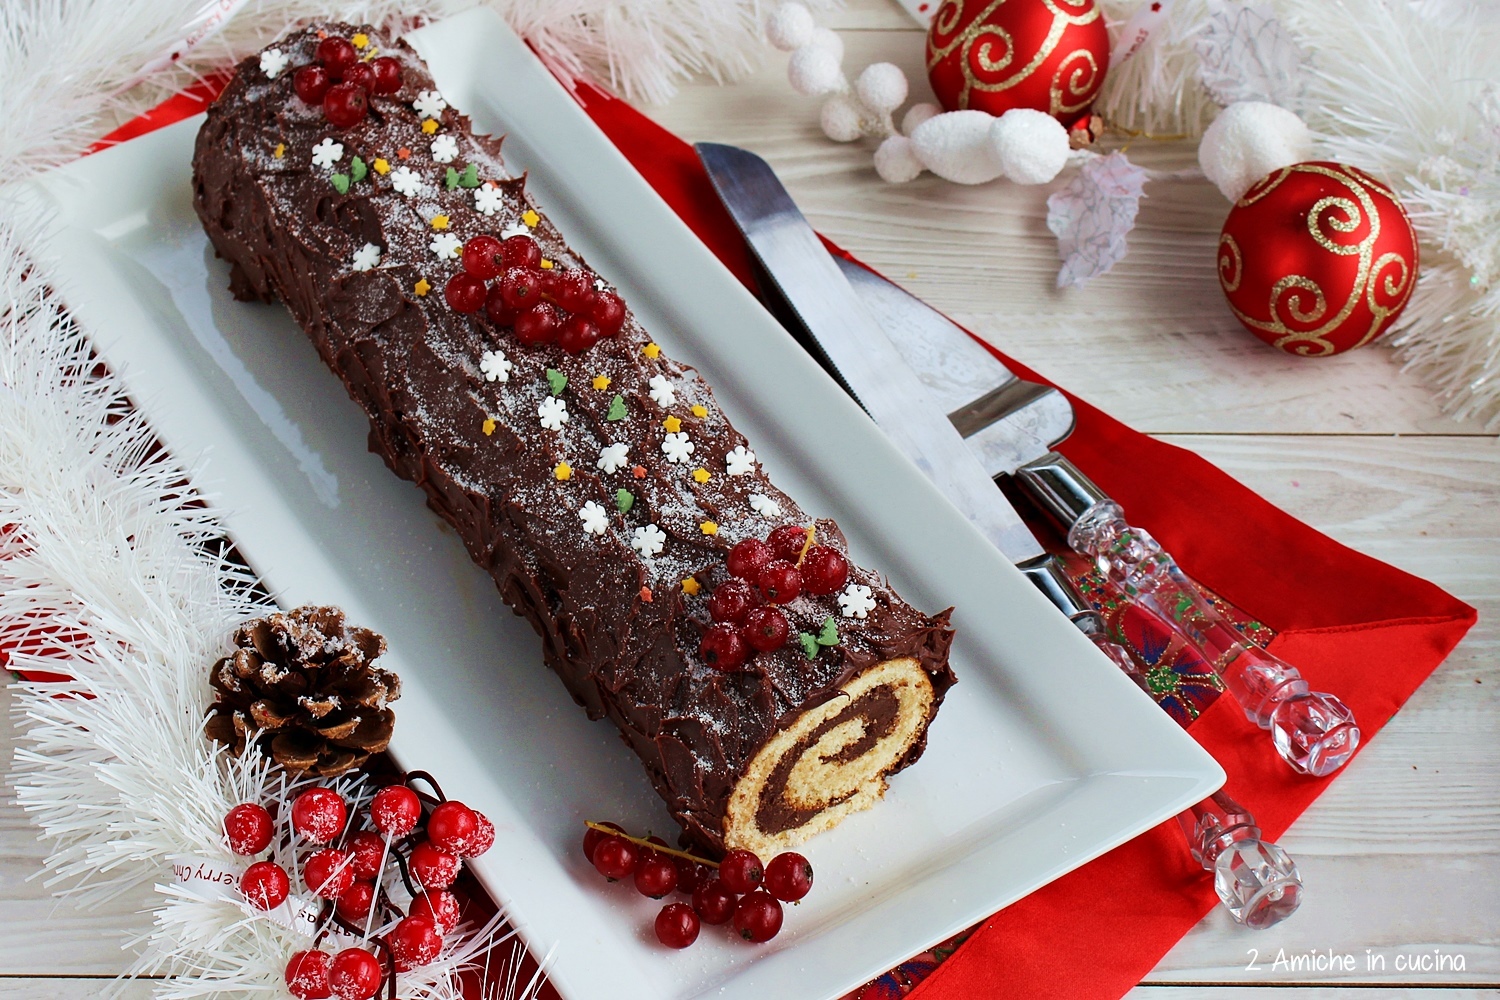 Copertura Per Tronchetto Di Natale.Tronchetto Al Cioccolato Buche De Noel 2 Amiche In Cucina